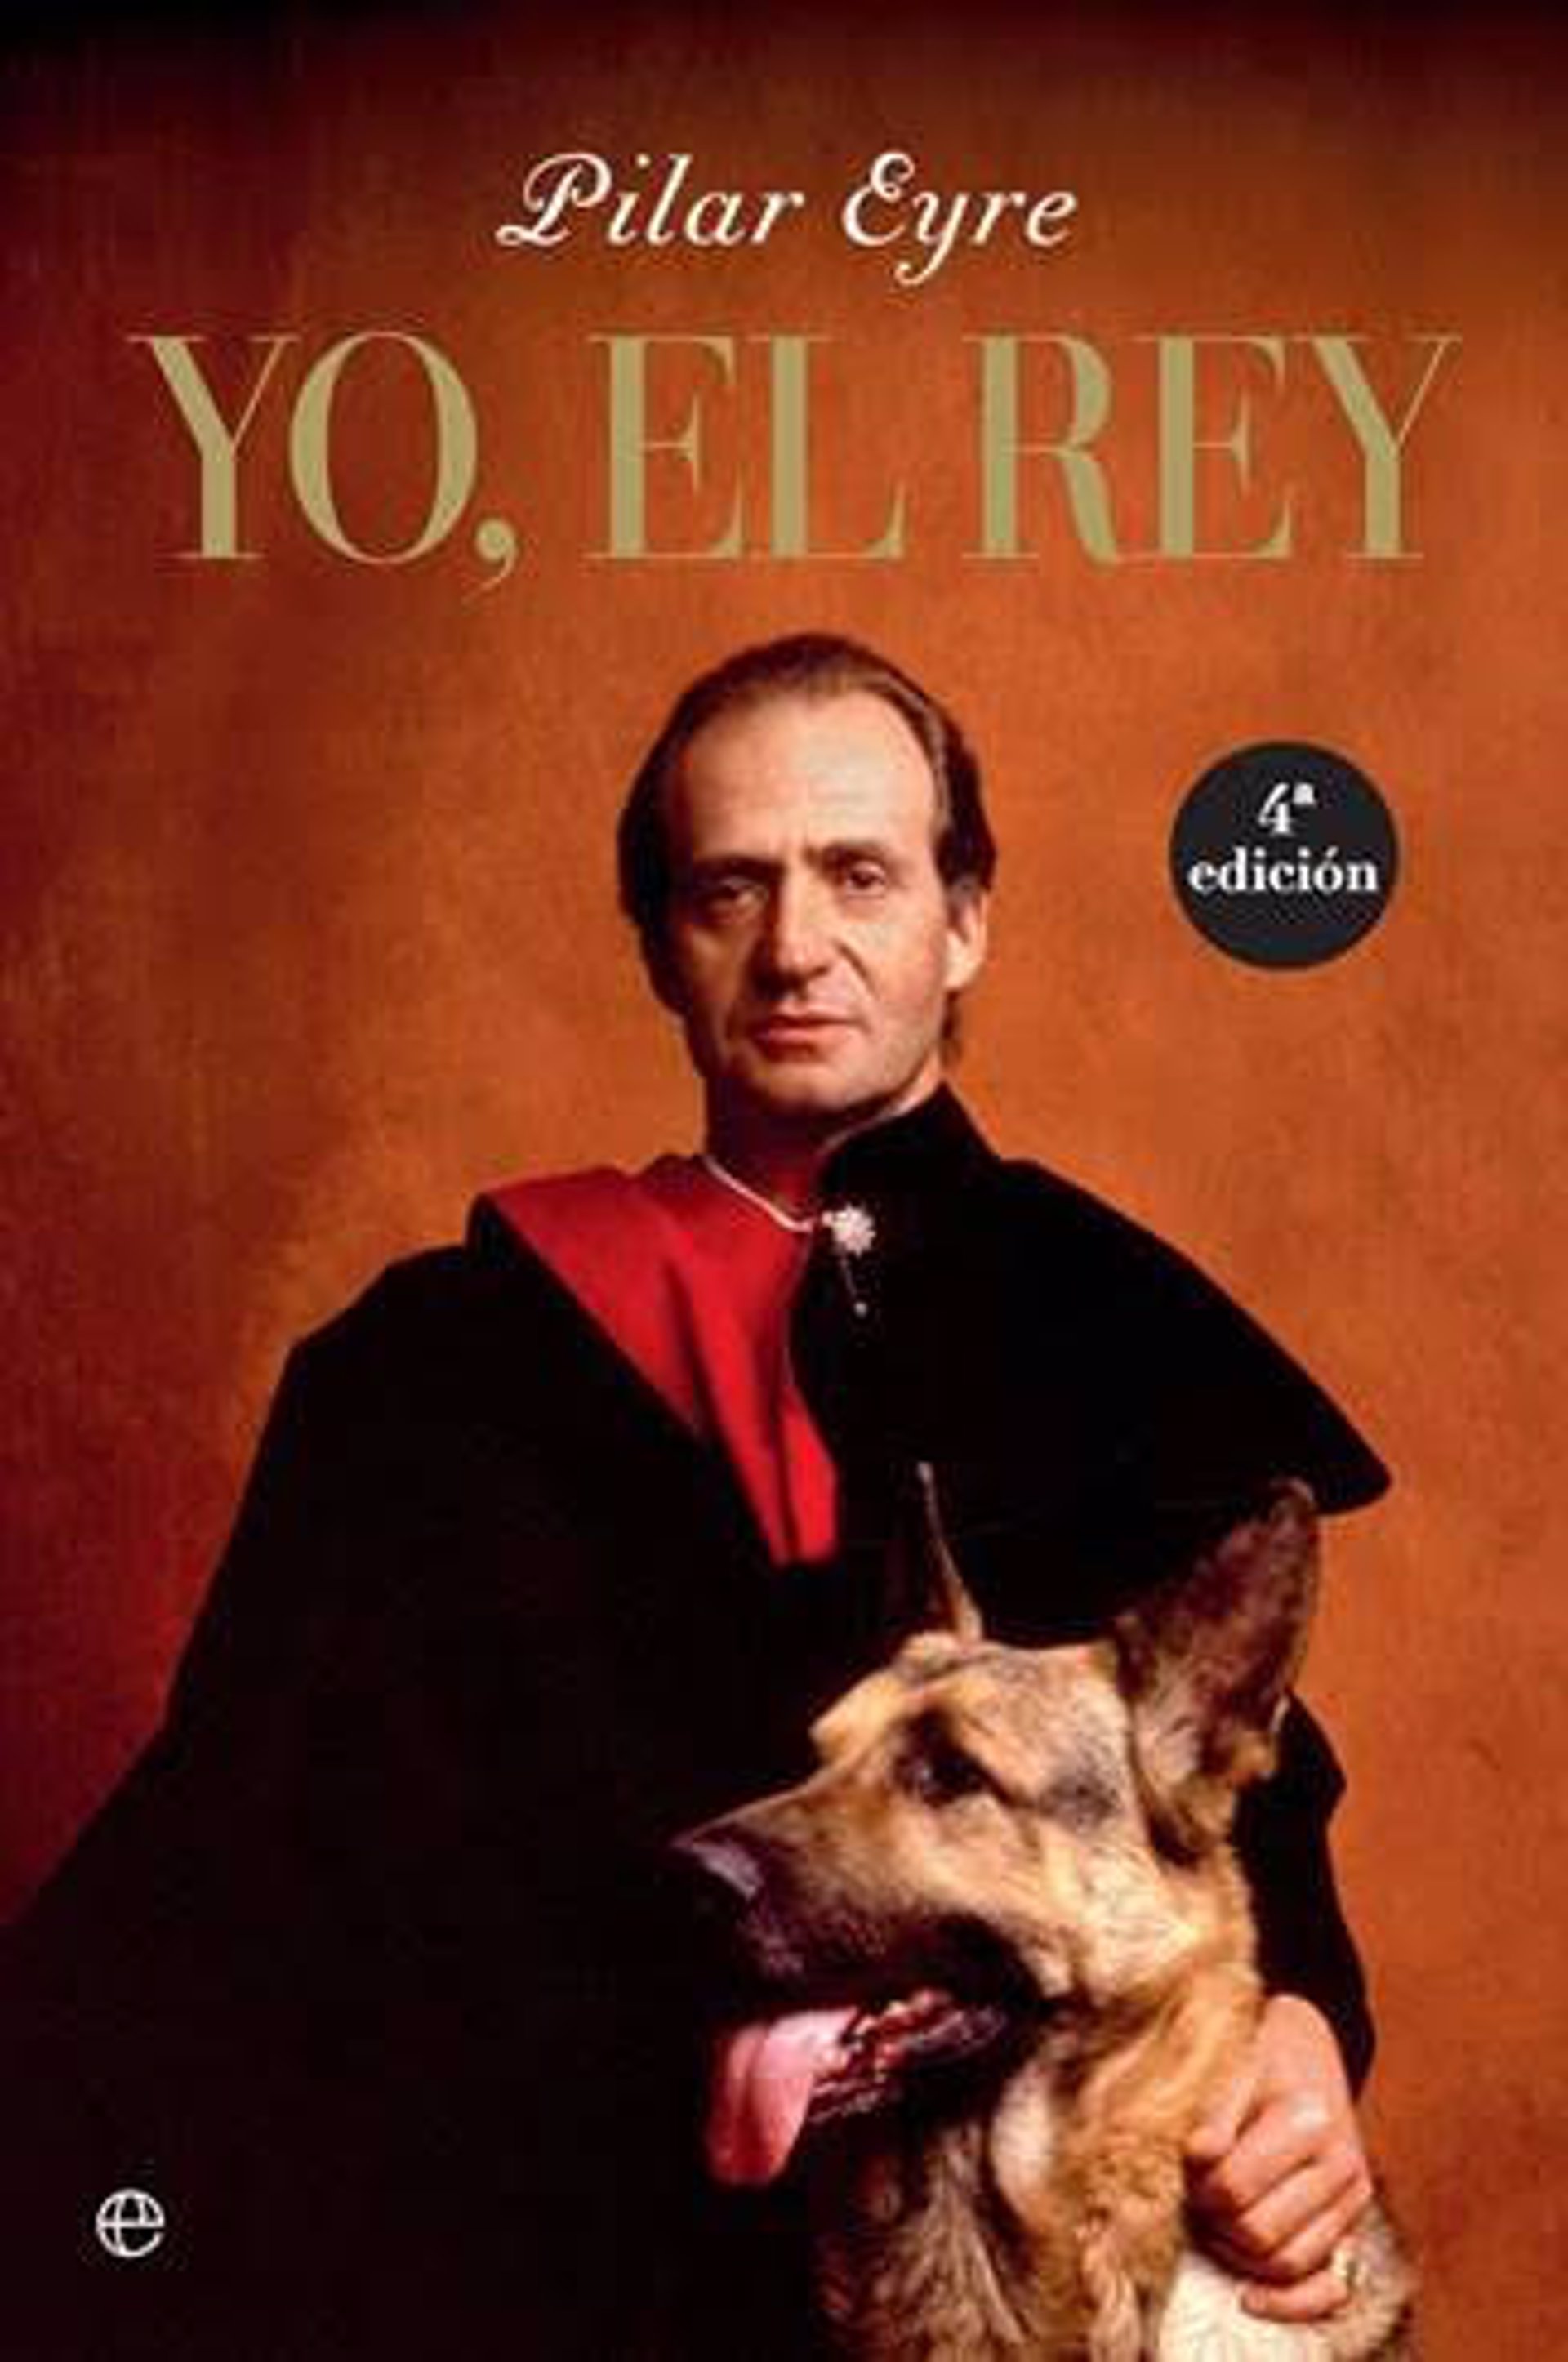 Libro de Pilar Eyre, "Yo, el Rey"